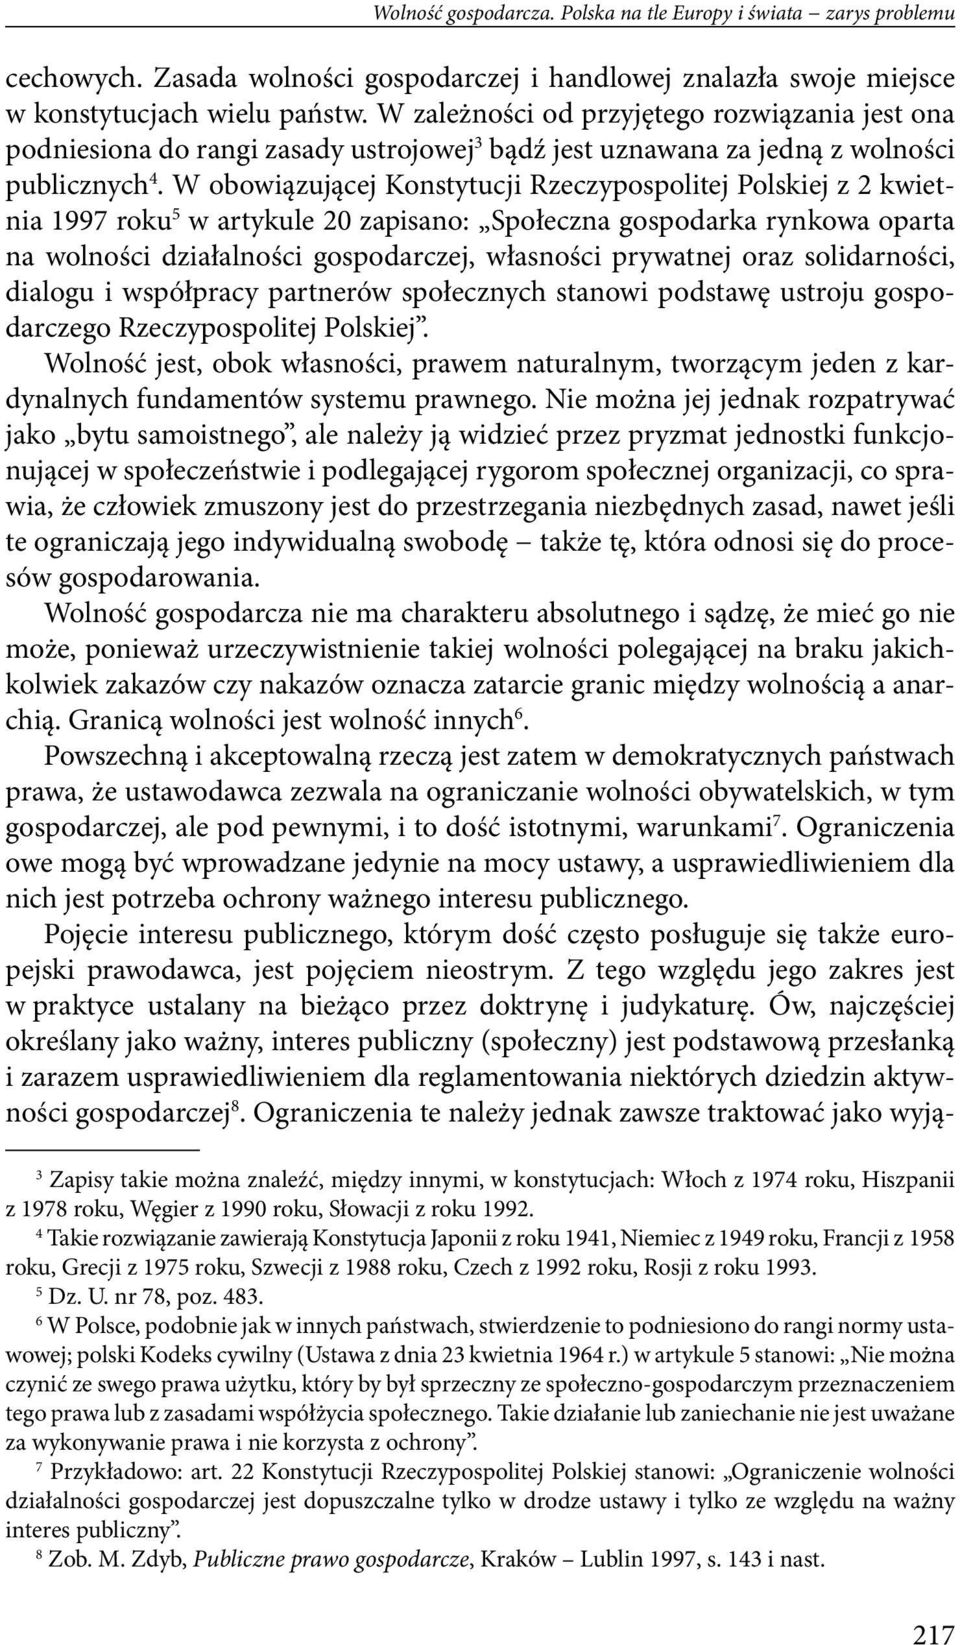 W obowiązującej Konstytucji Rzeczypospolitej Polskiej z 2 kwietnia 1997 roku 5 w artykule 20 zapisano: Społeczna gospodarka rynkowa oparta na wolności działalności gospodarczej, własności prywatnej